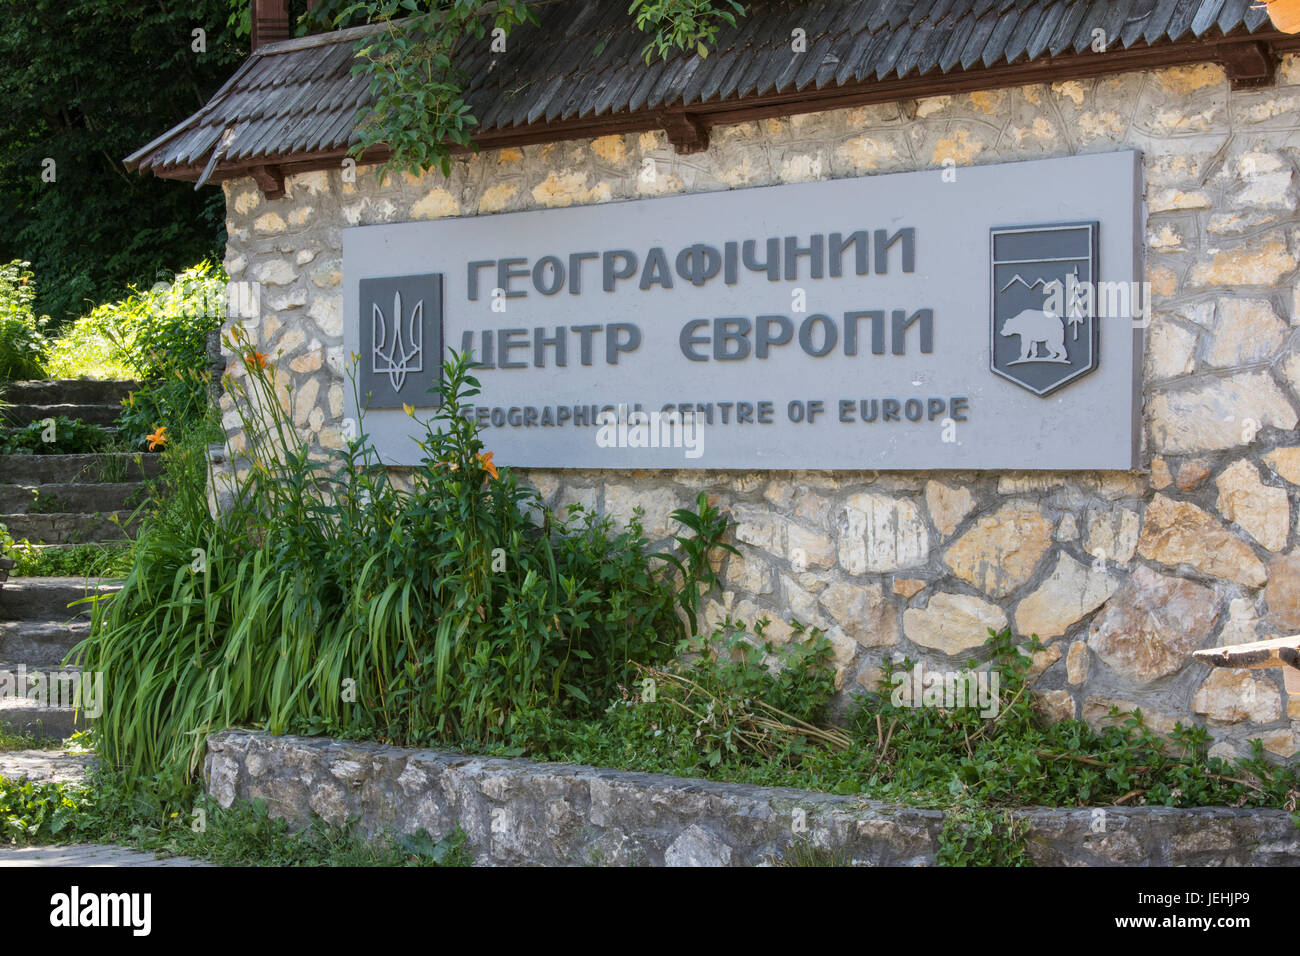 Das Denkmal für das geographische Zentrum Europas in der Ukraine Stockfoto